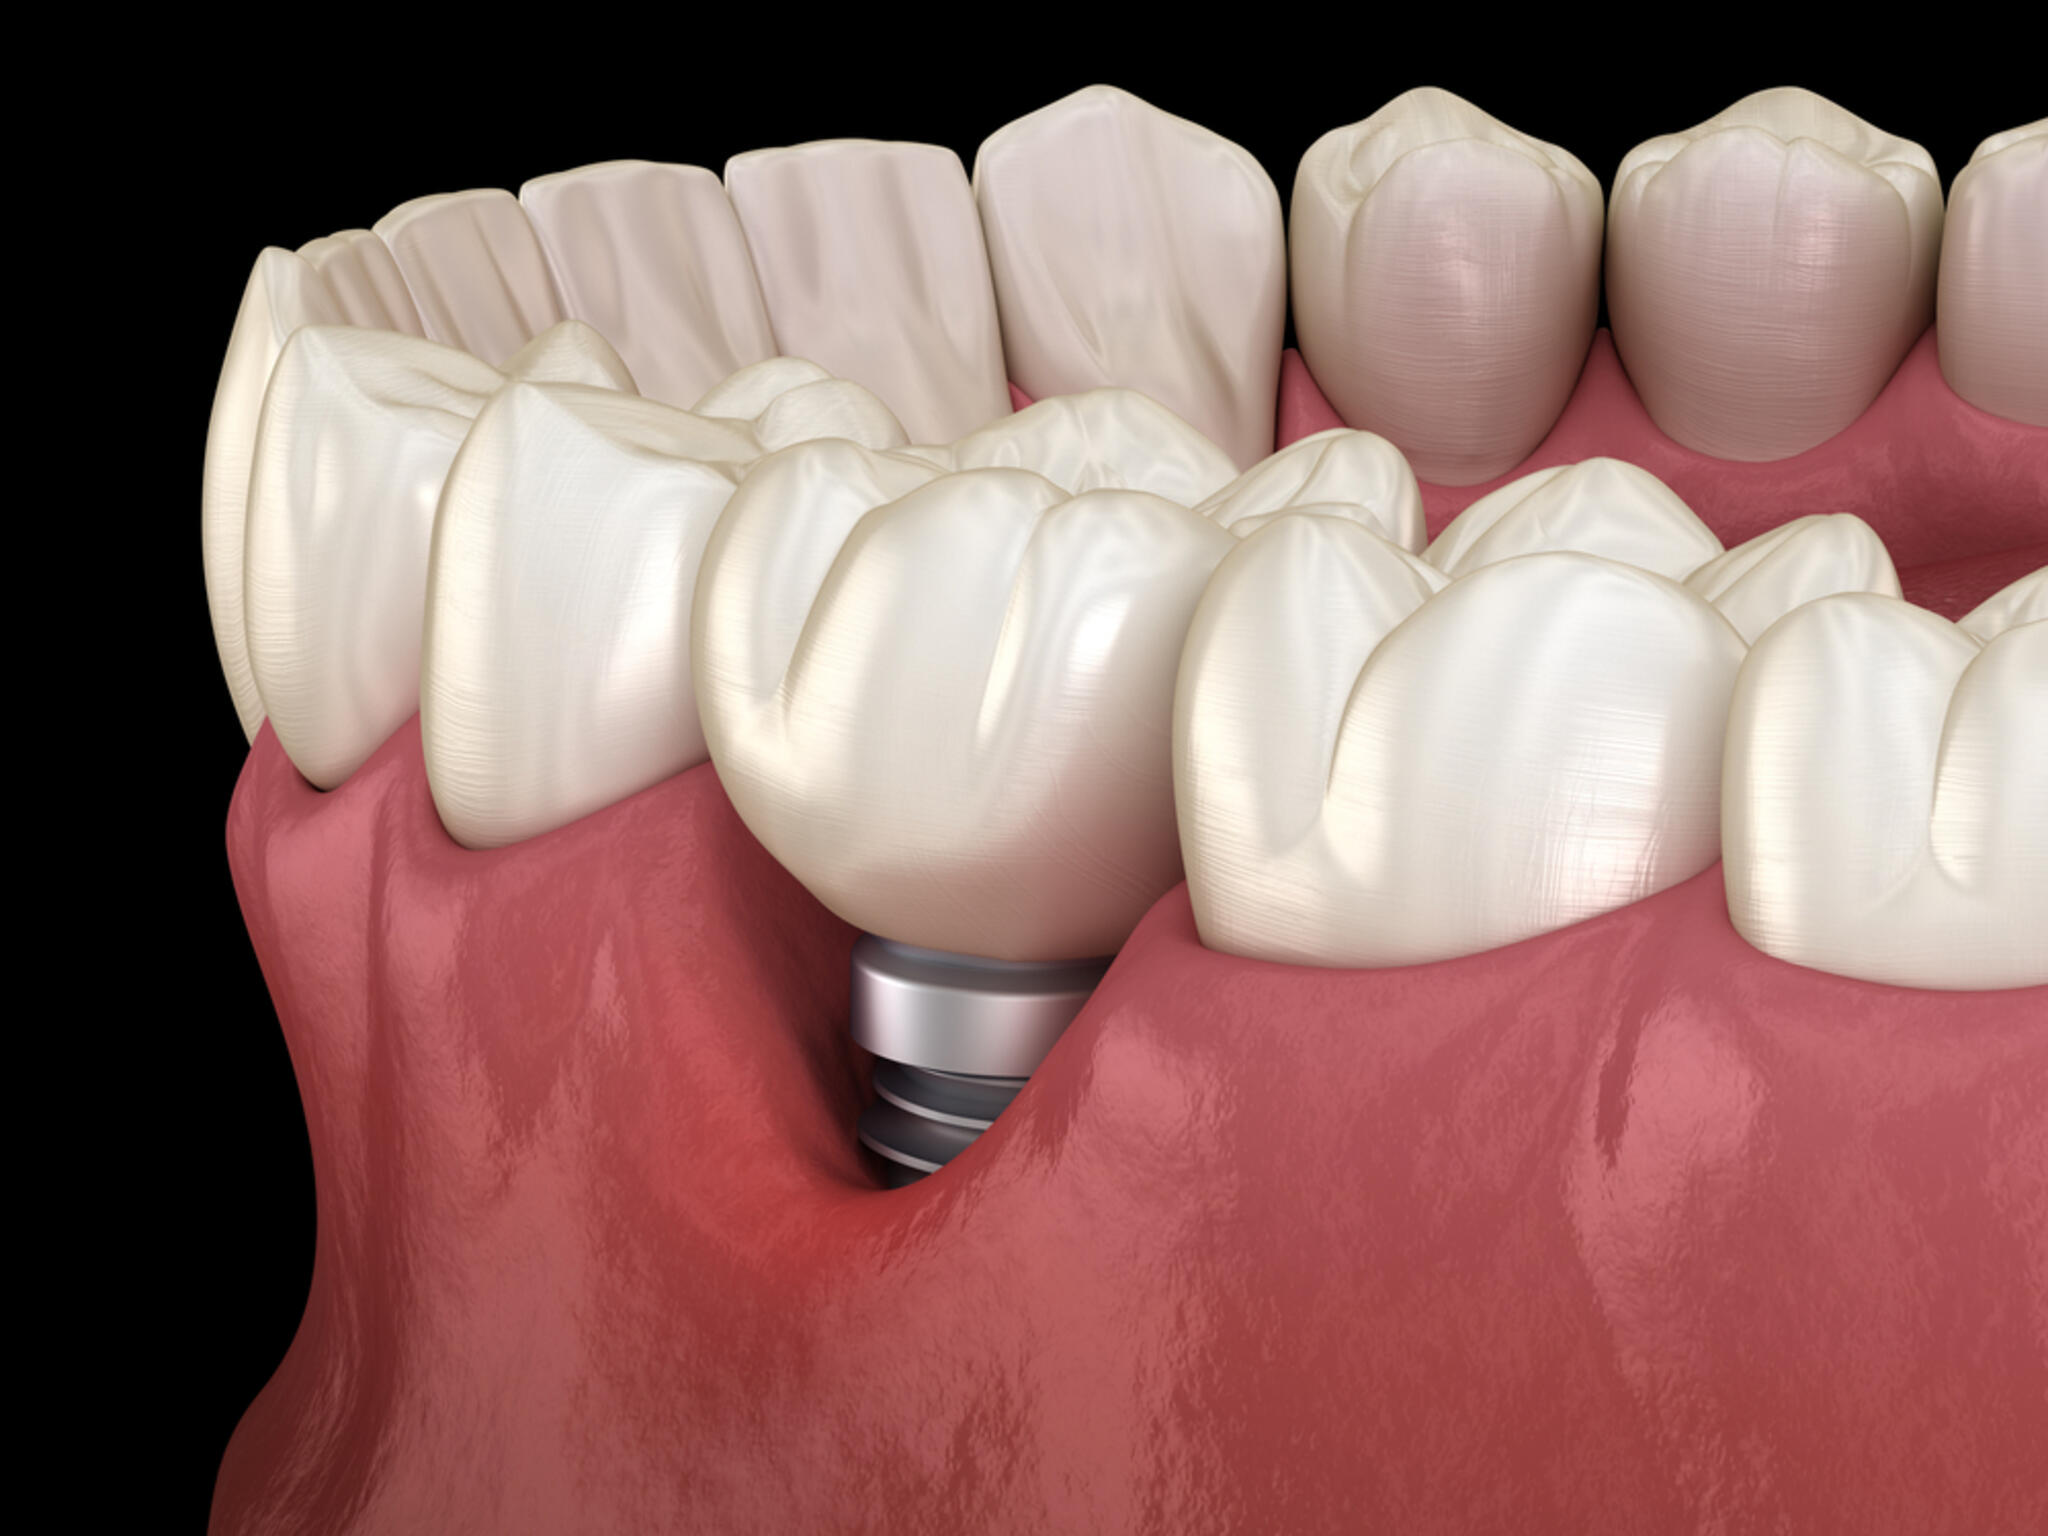 かみむら歯科・矯正歯科クリニックからのお知らせ(インプラントの天敵、インプラント周囲炎とは)に関する写真